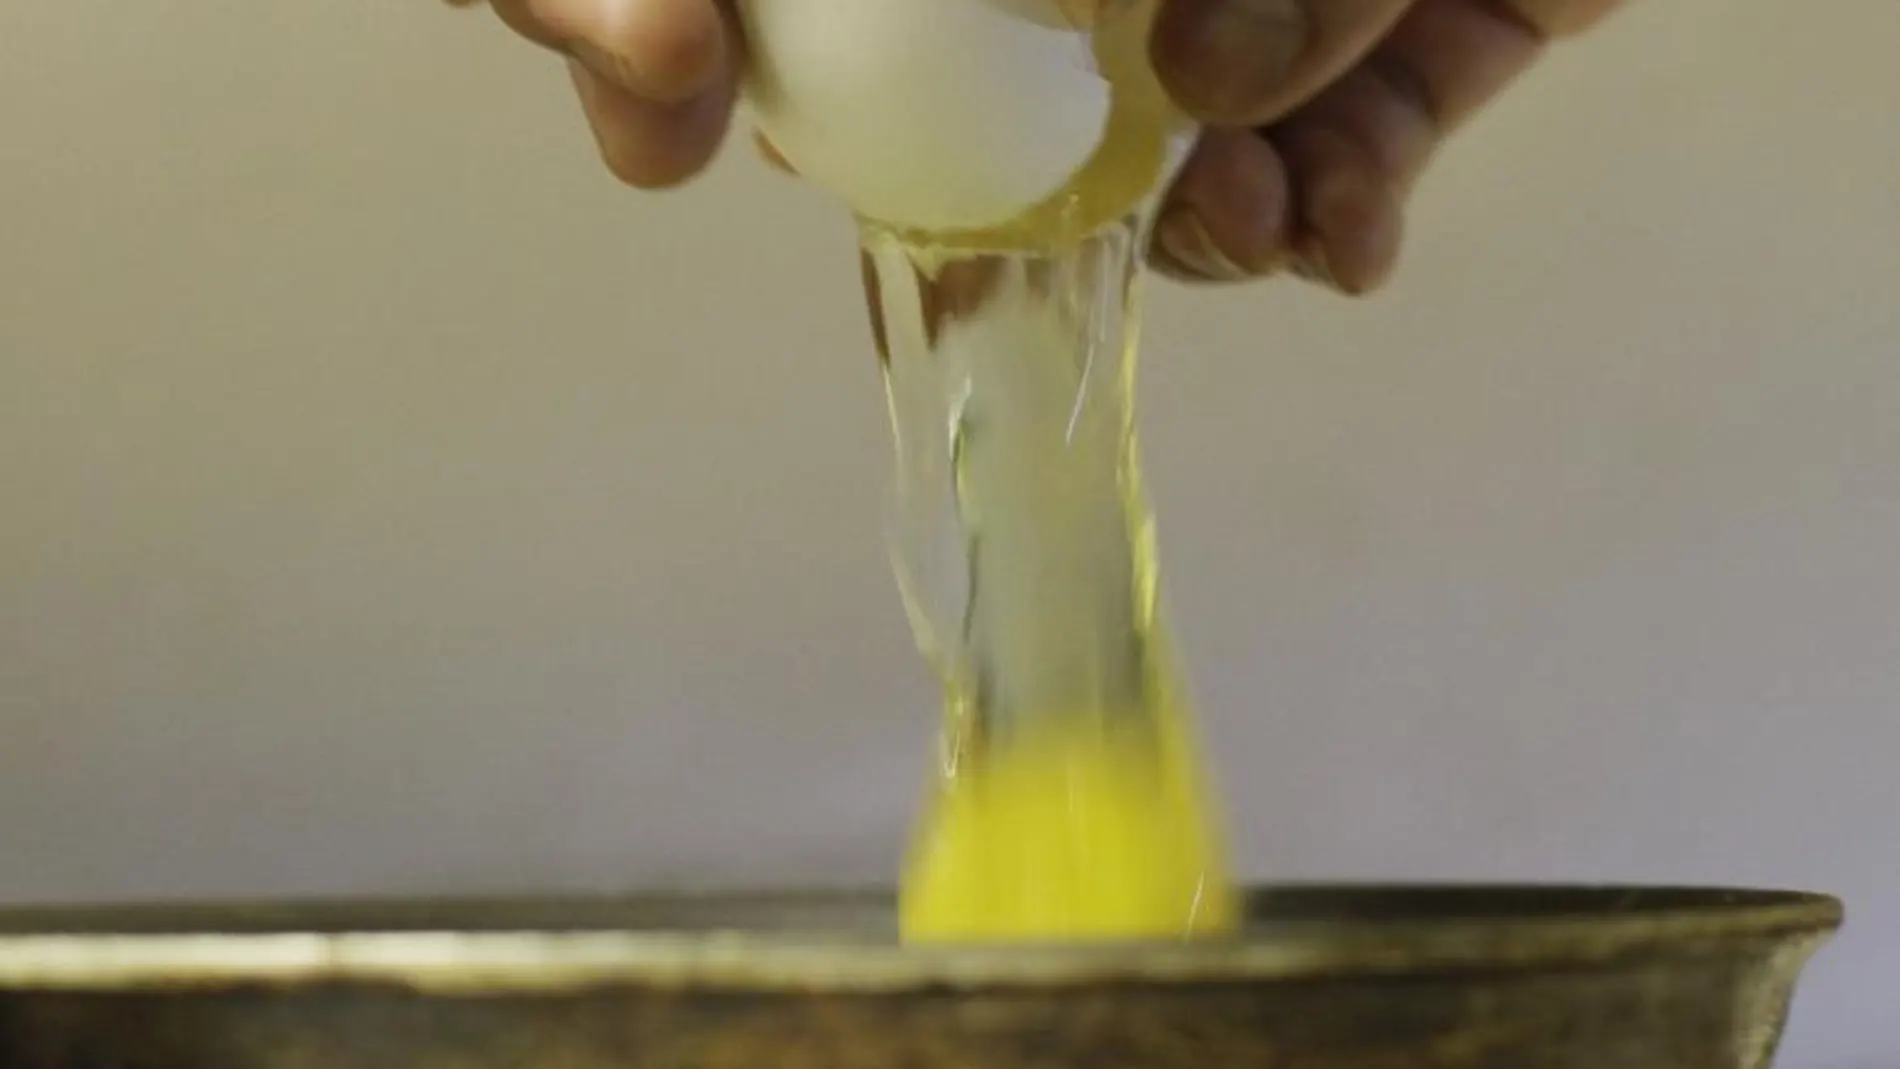 Salud recomienda extremar las precauciones con alimentos a base de huevo para evitar la salmonelosis